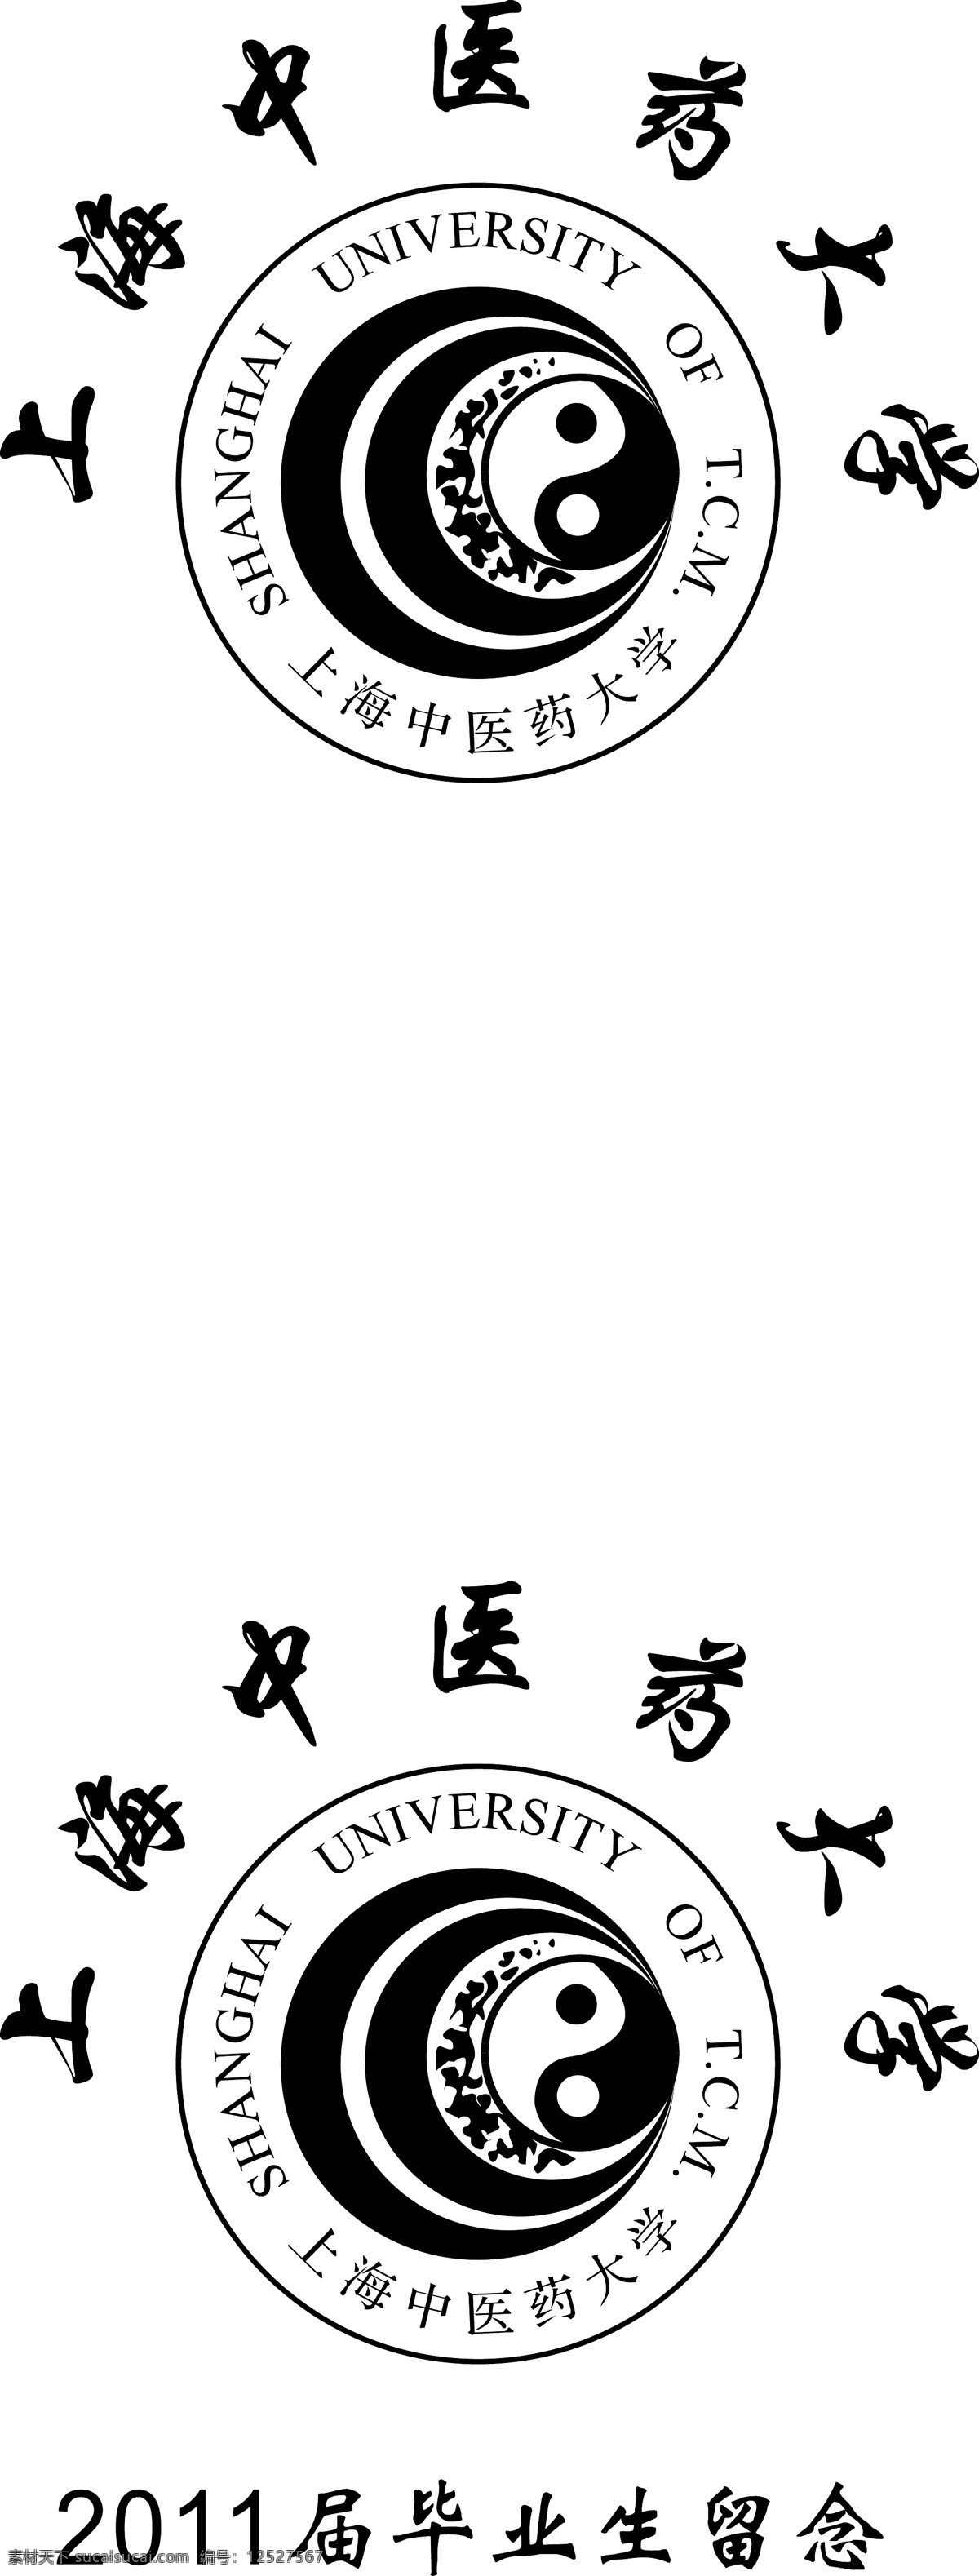 上海 上海大学 上海中医药大学 矢量 模板下载 上海中医 上海医药大学 海报 其他海报设计